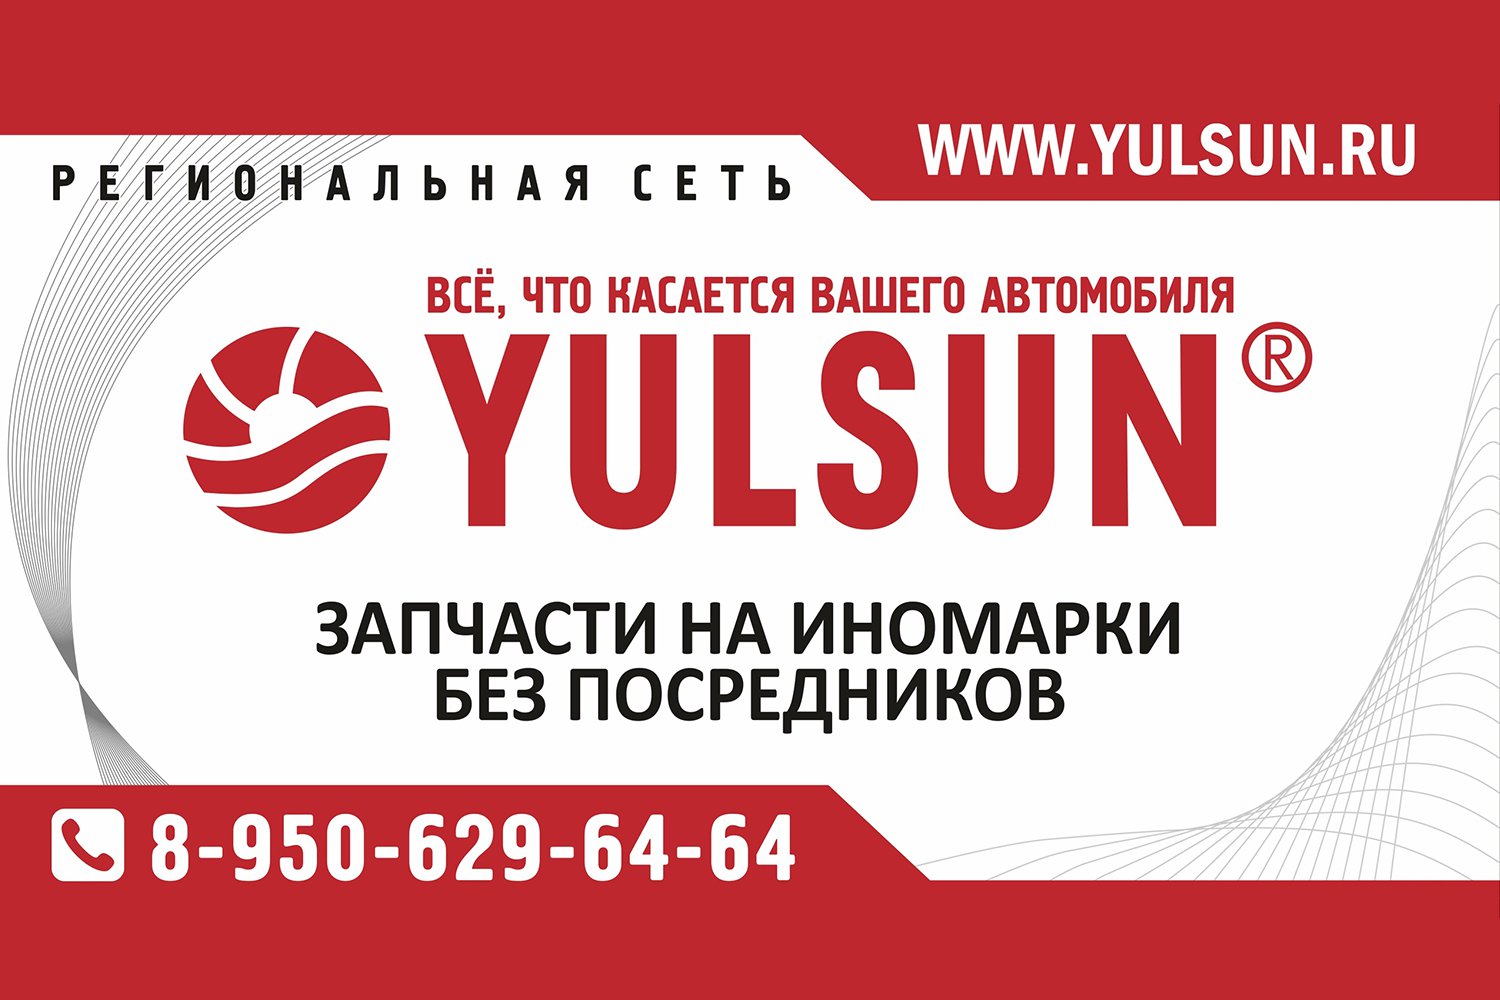 YULSUN: интернет-магазин автозапчастей для иномарок и отечественных авто